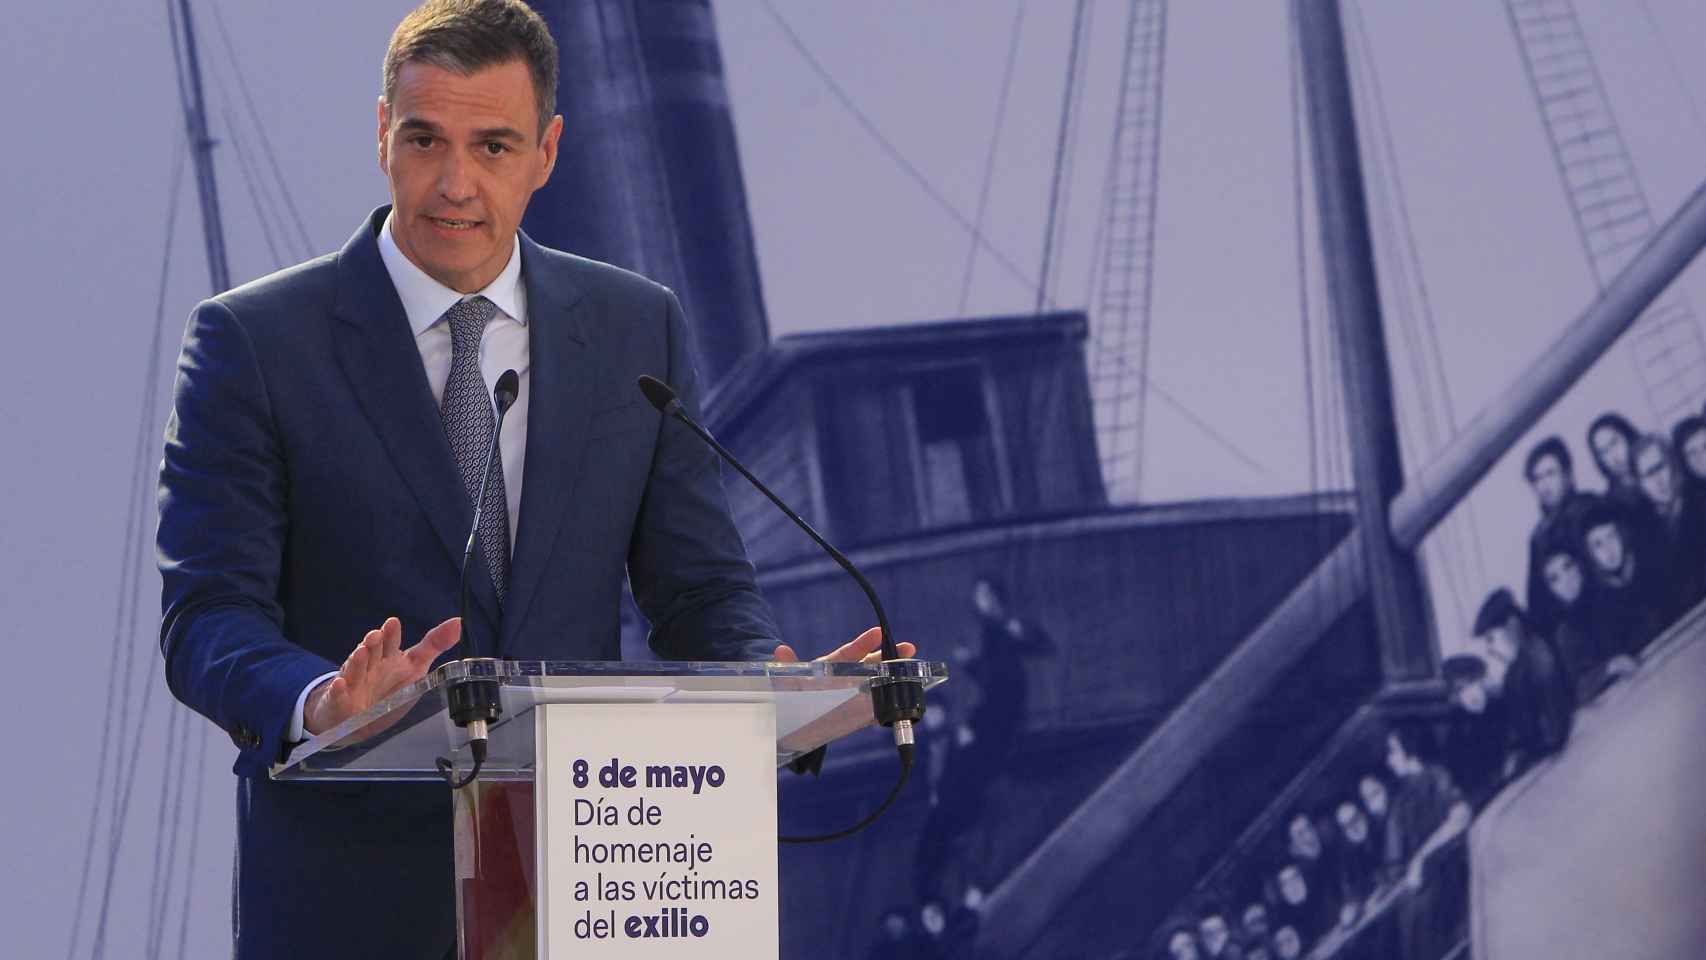 El alcalde de Alicante no va al homenaje al exilio del Gobierno:  Era un mitin contra la Ley de Concordia 